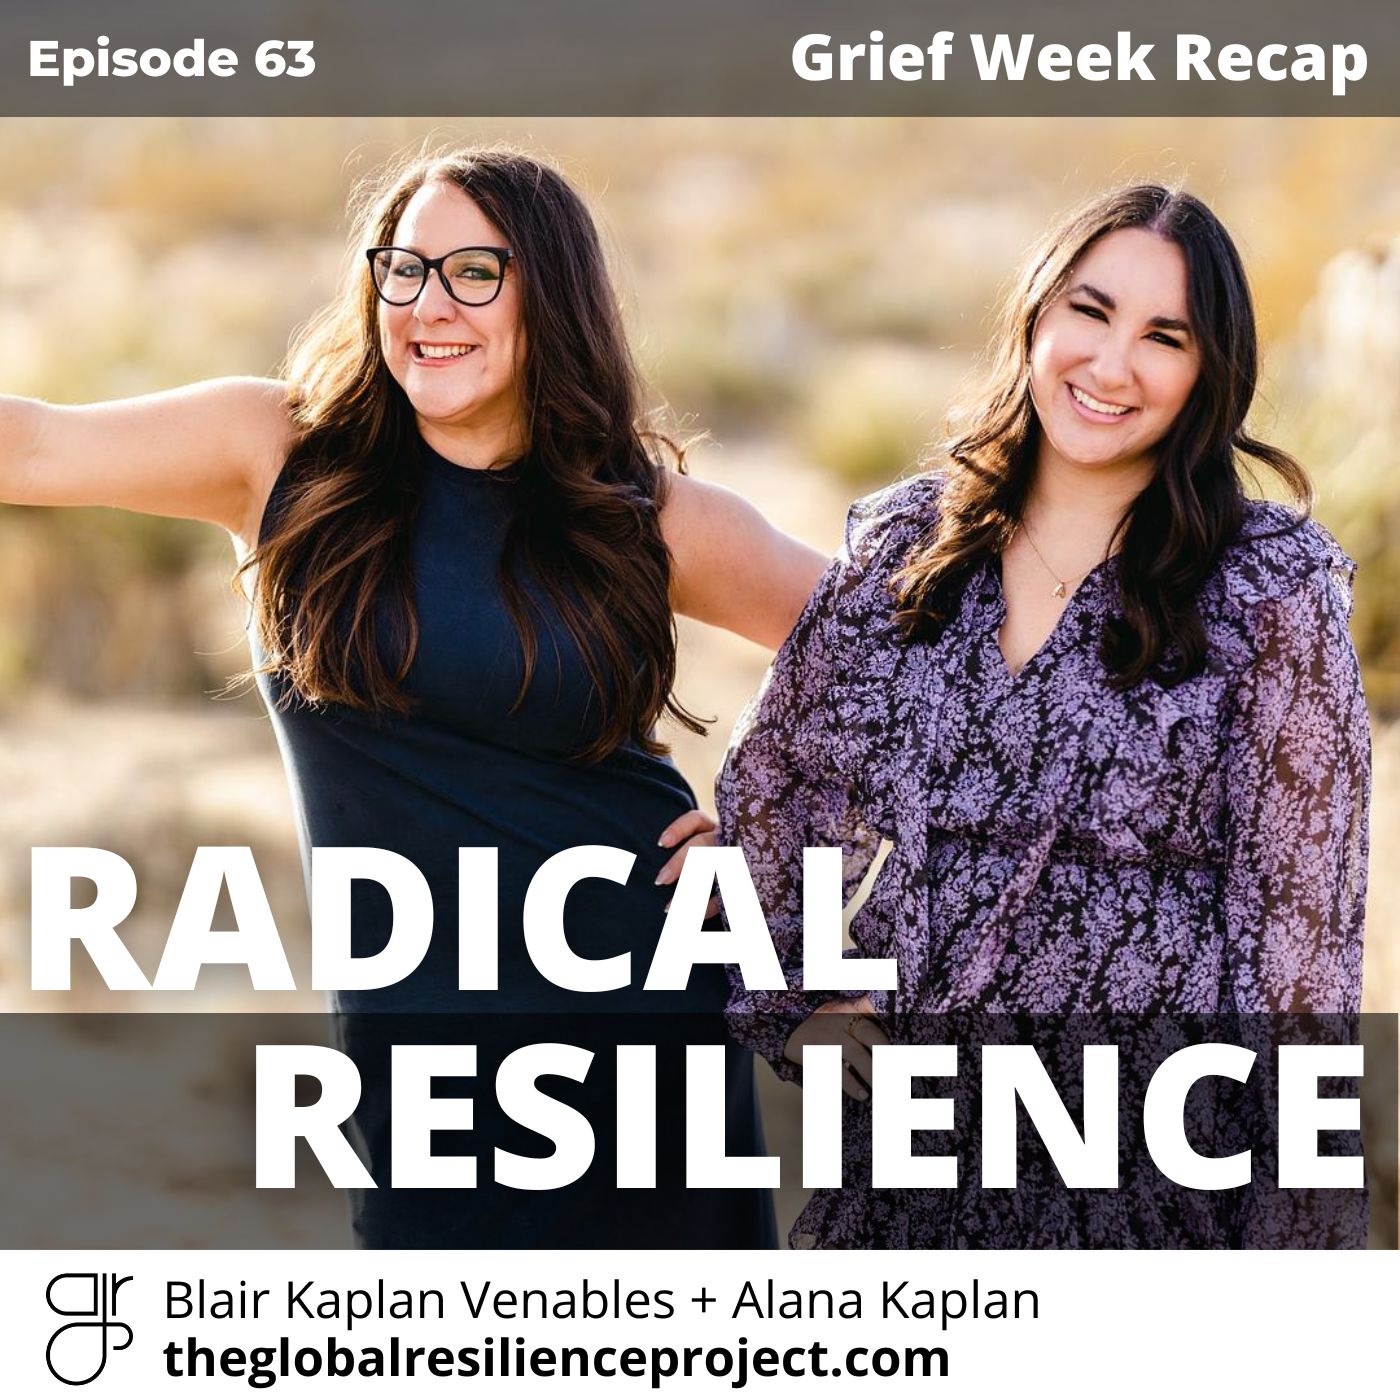 Artwork for podcast Radical Resilience